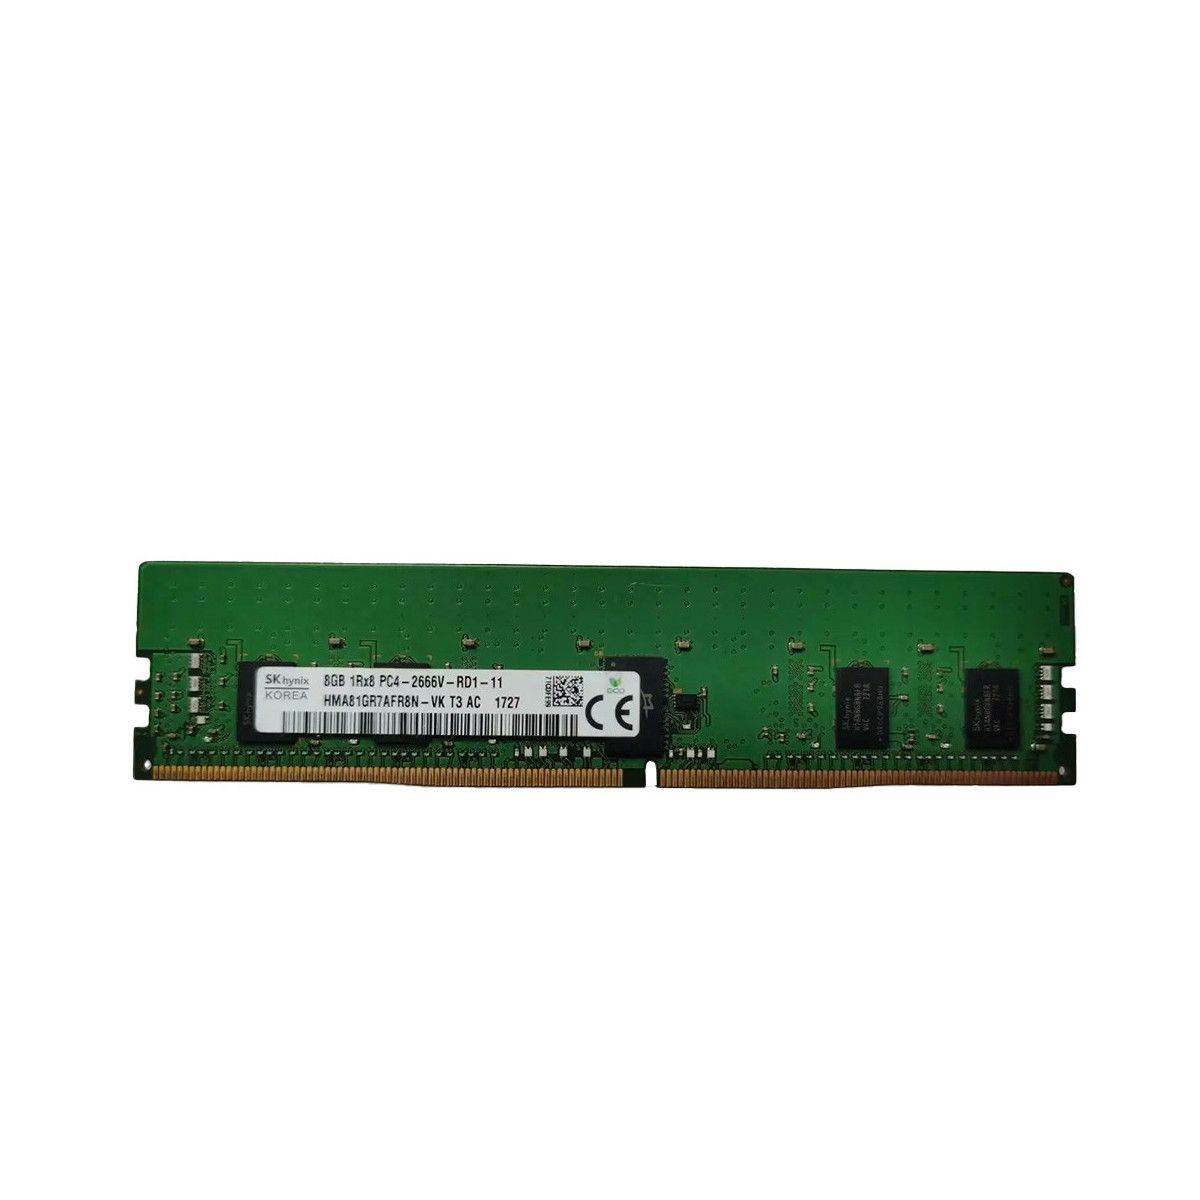 T9V39AA-MS - Mem star 1x 8GB DDR4-2400 RDIMM PC4-19200T-R - Memstar Compatible OEM Mémoire 1 - Memstar 